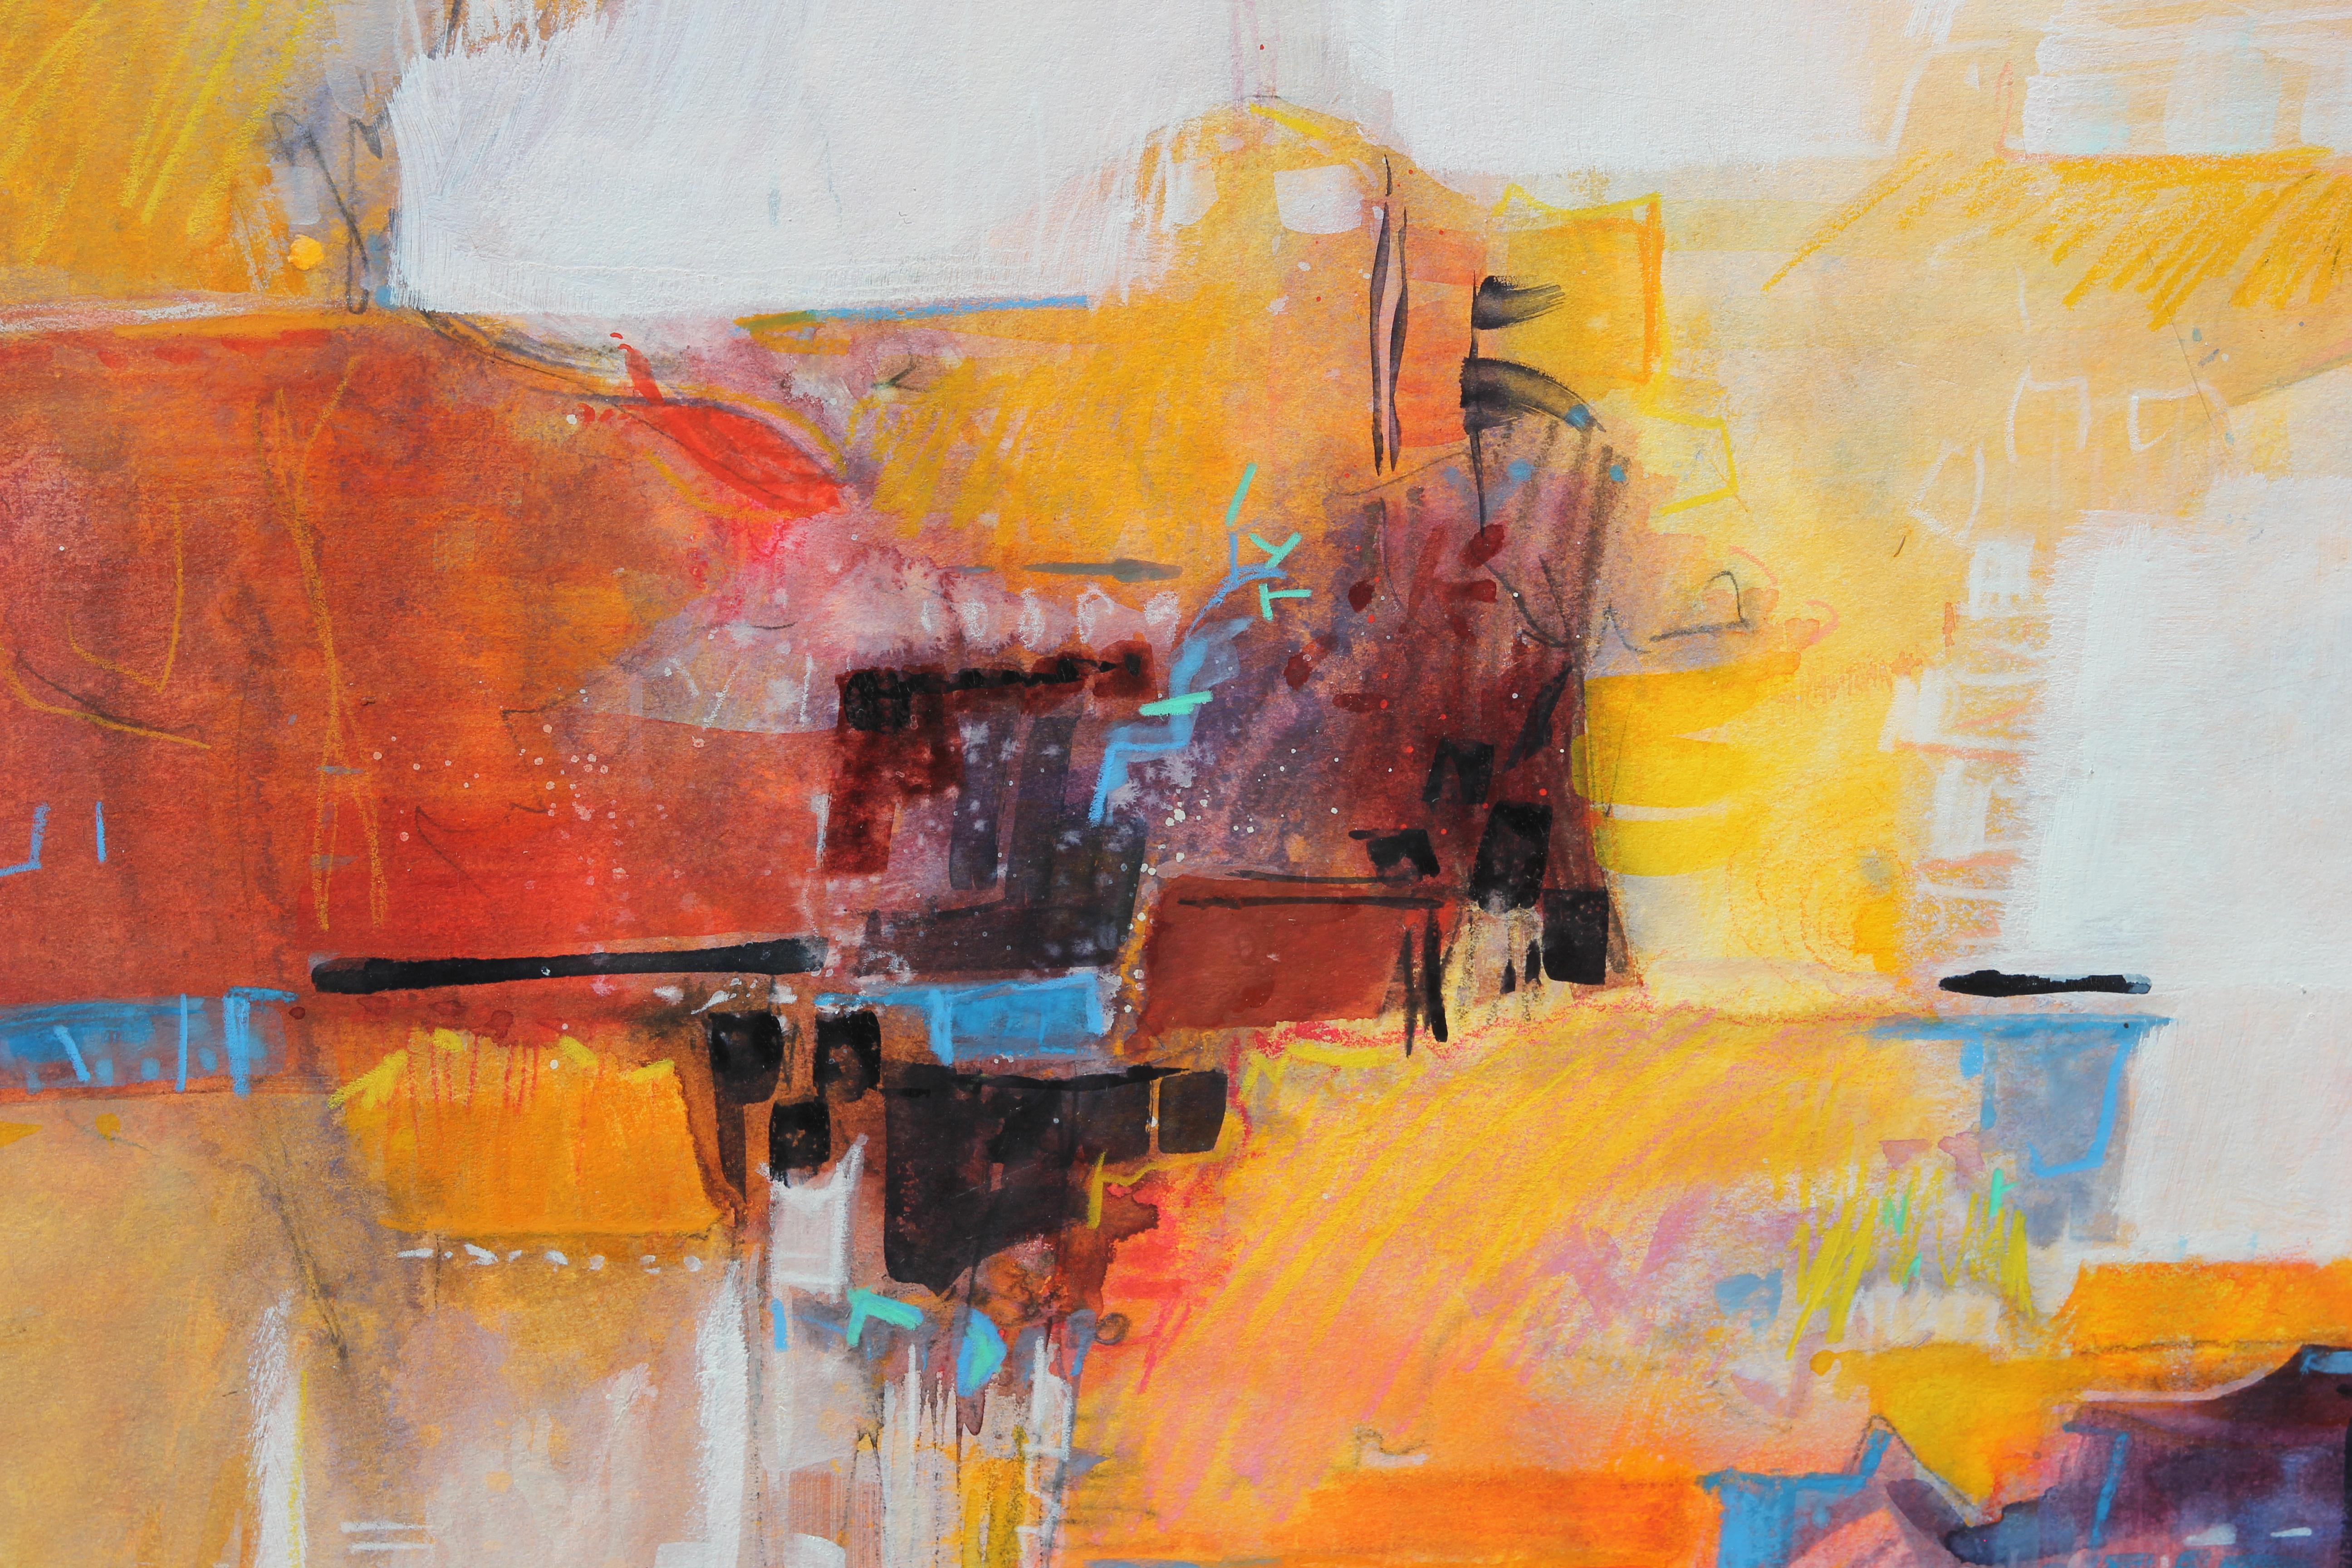 Peinture abstraite moderne jaune, orange et rouge réalisée par l'artiste texane Carole Myers. L'œuvre présente des traits expressifs de couleurs vives formant librement une vue panoramique de Cuernavaca, au Mexique. La pièce est signée à l'avant,